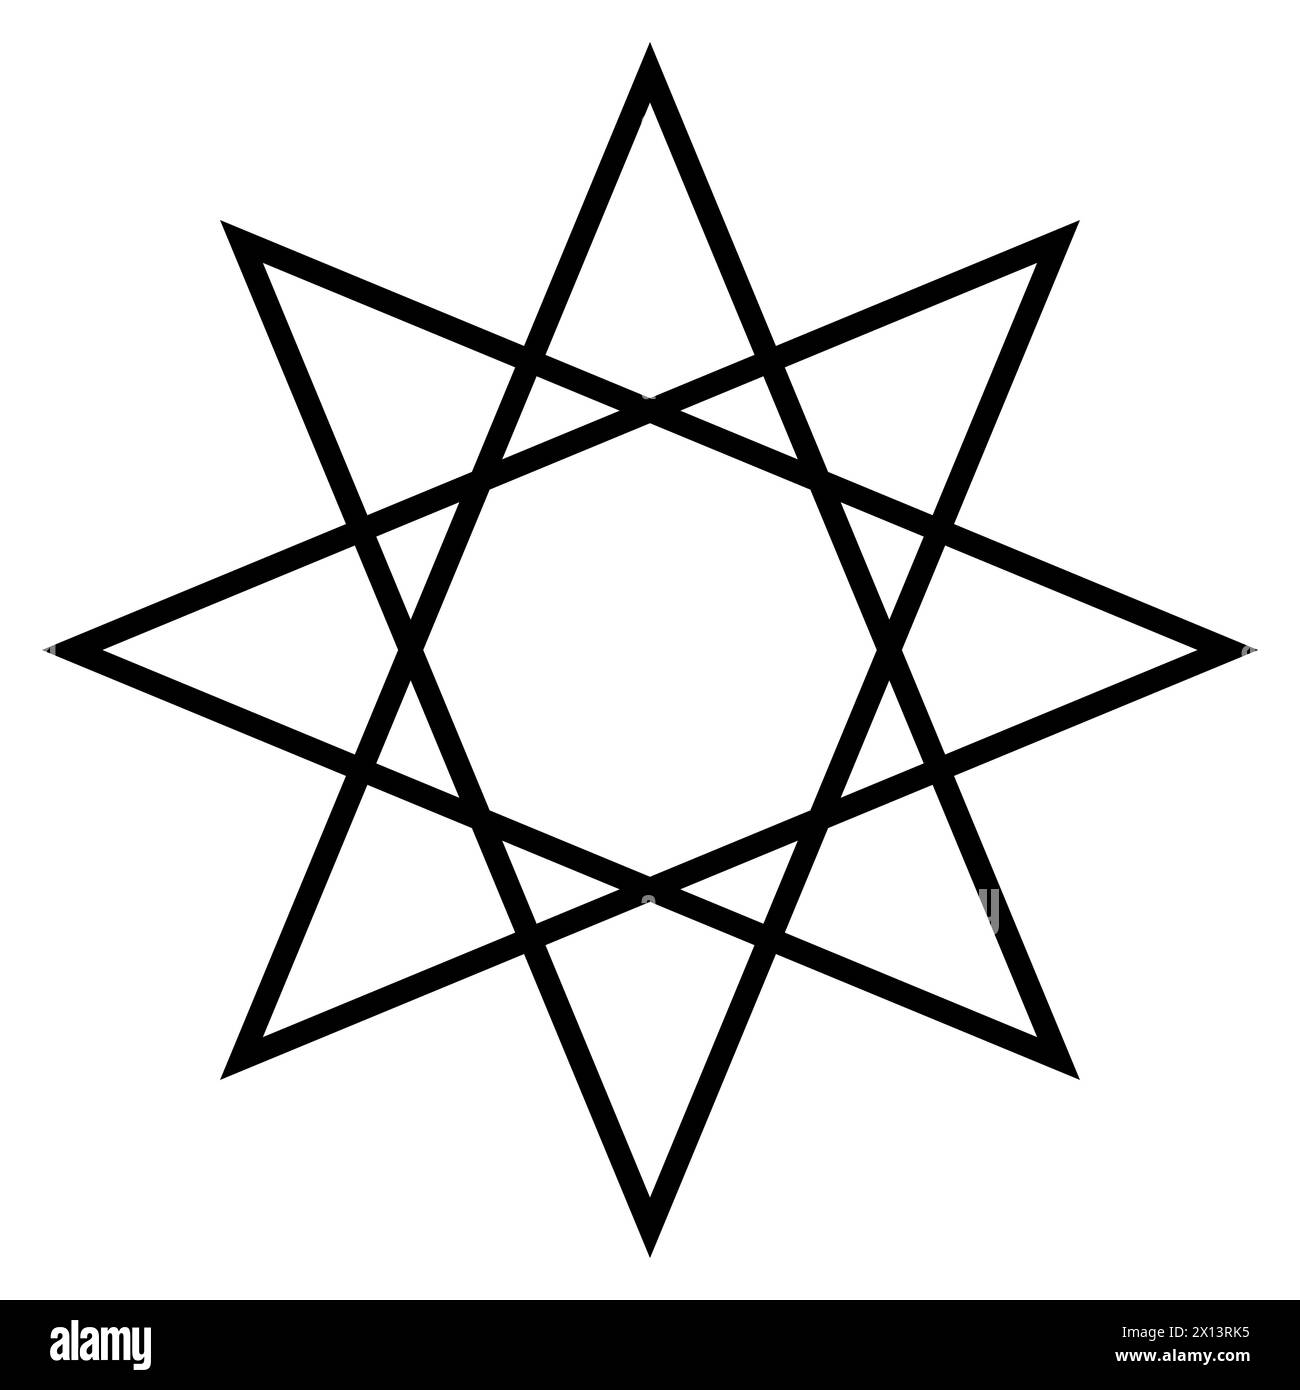 Oktagramm-Form-Symbol, schwarz-weiße Vektorlinien-Illustration eines achtspitzigen Sternpolygons Stock Vektor